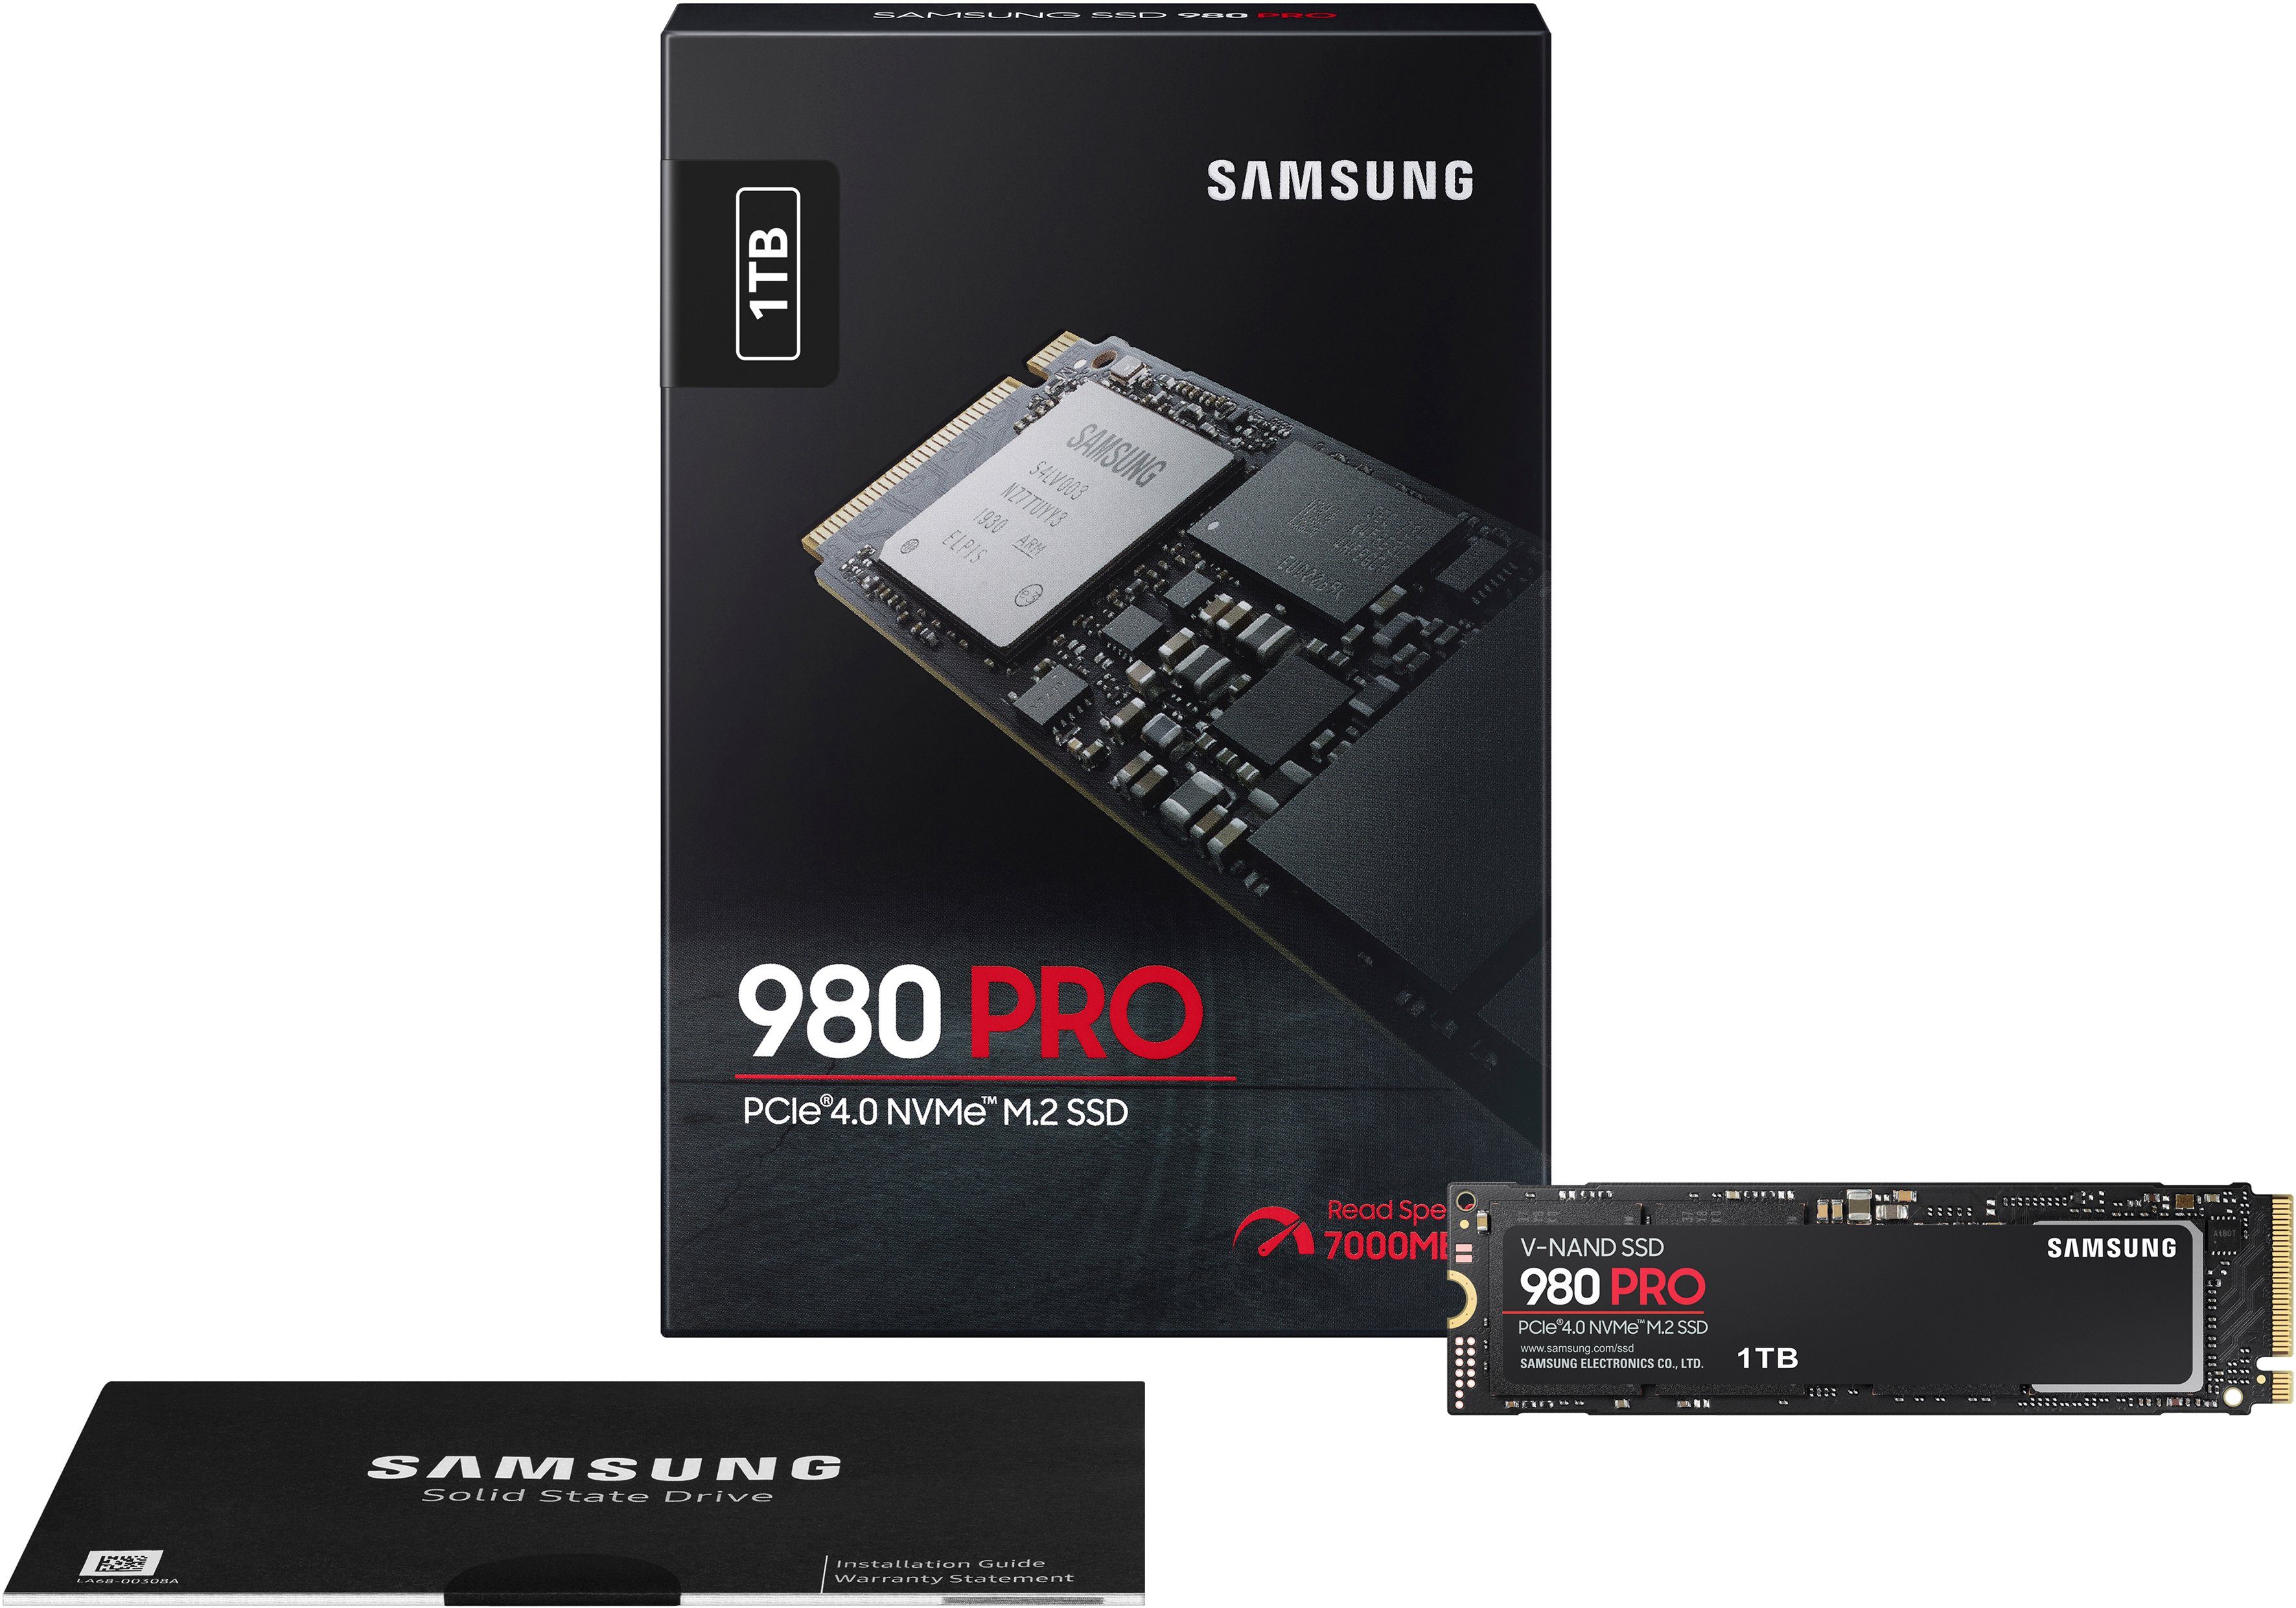 PRO 5000 5 7000 M.2 (1 kompatibel, interne MB/S MB/S Schreibgeschwindigkeit, Playstation TB) 980 PCIe® Samsung NVMe™, 4.0 Lesegeschwindigkeit, SSD